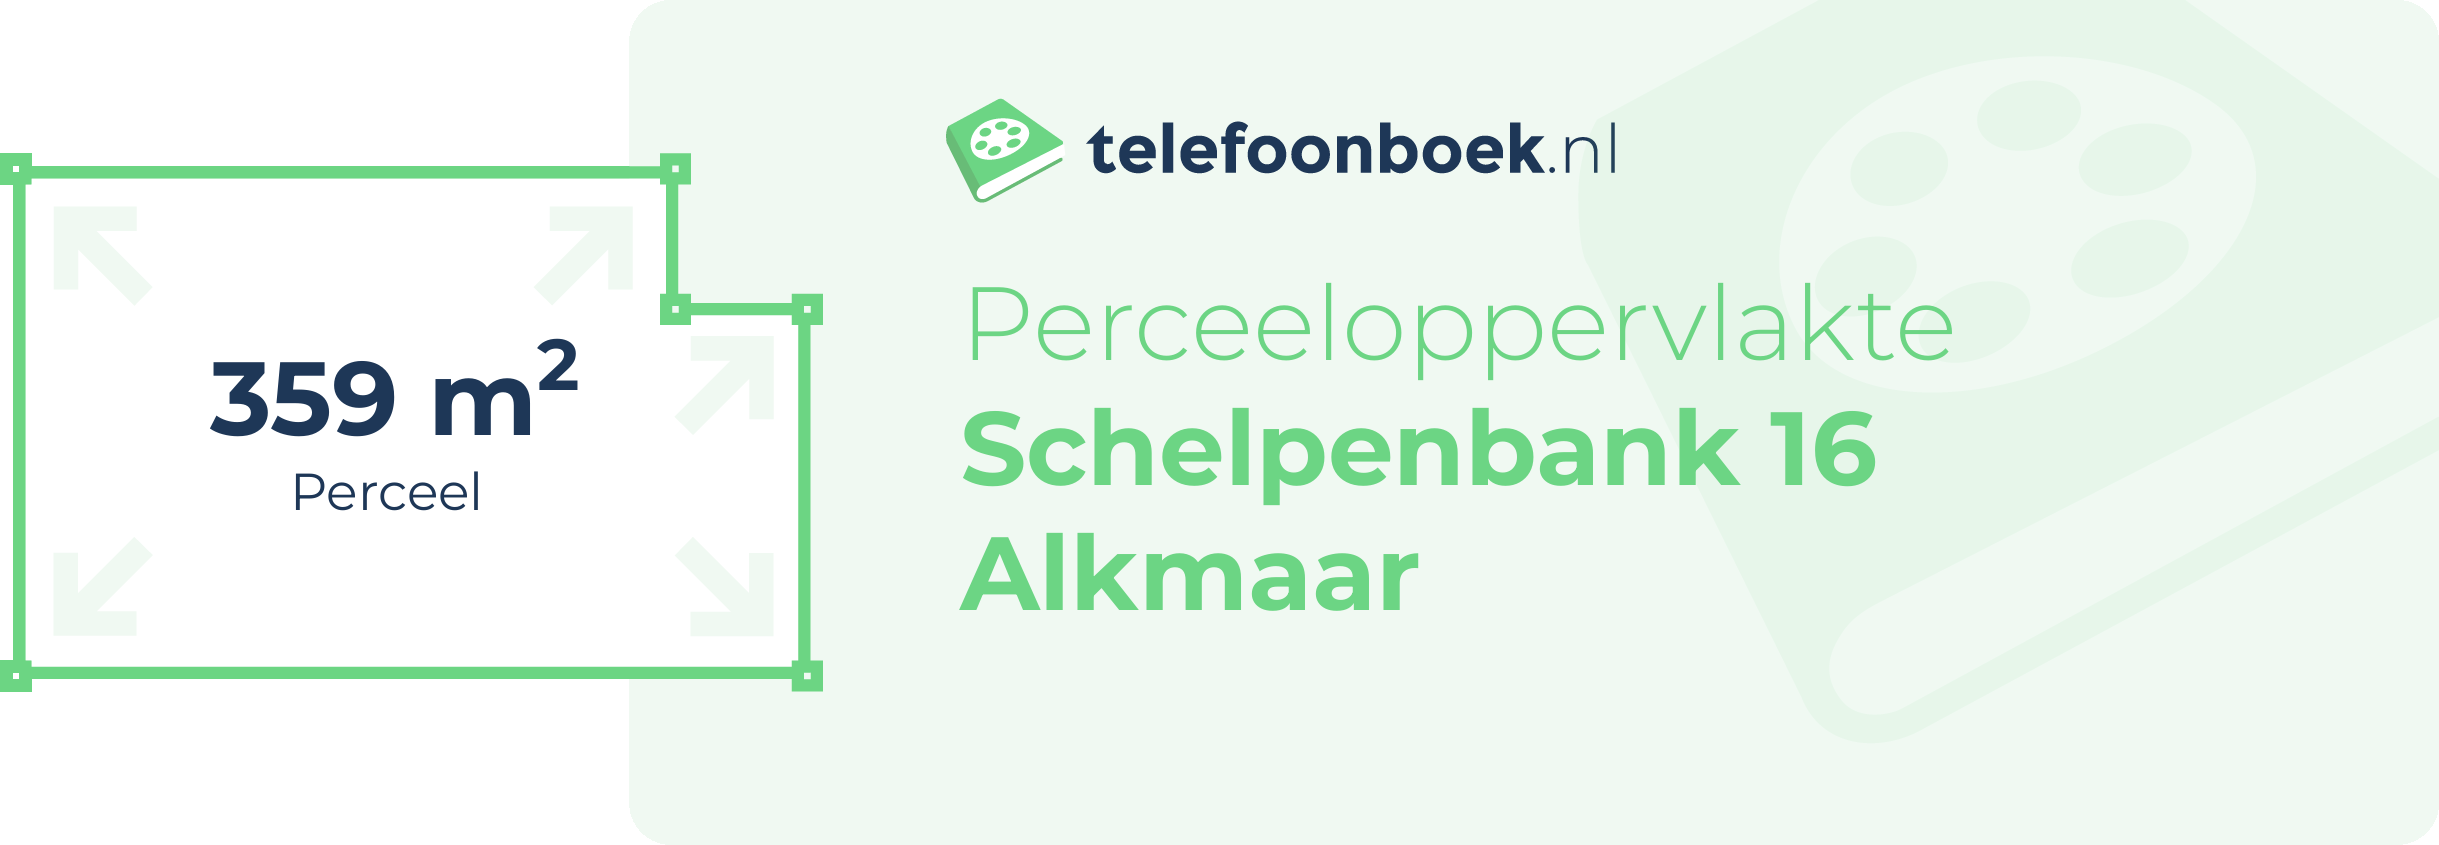 Perceeloppervlakte Schelpenbank 16 Alkmaar